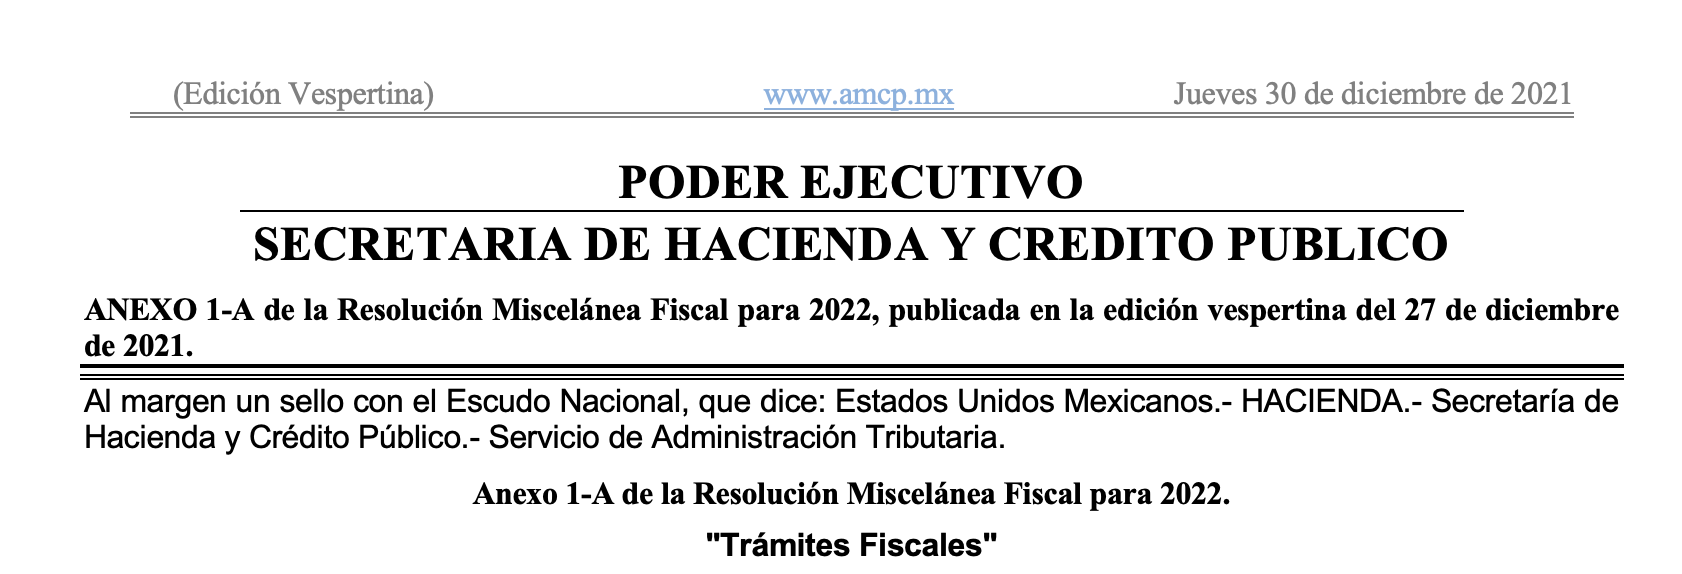 Anexo 1-A Trámites Fiscales RM 2022. DOF 30/12/2021 – AMCPMX